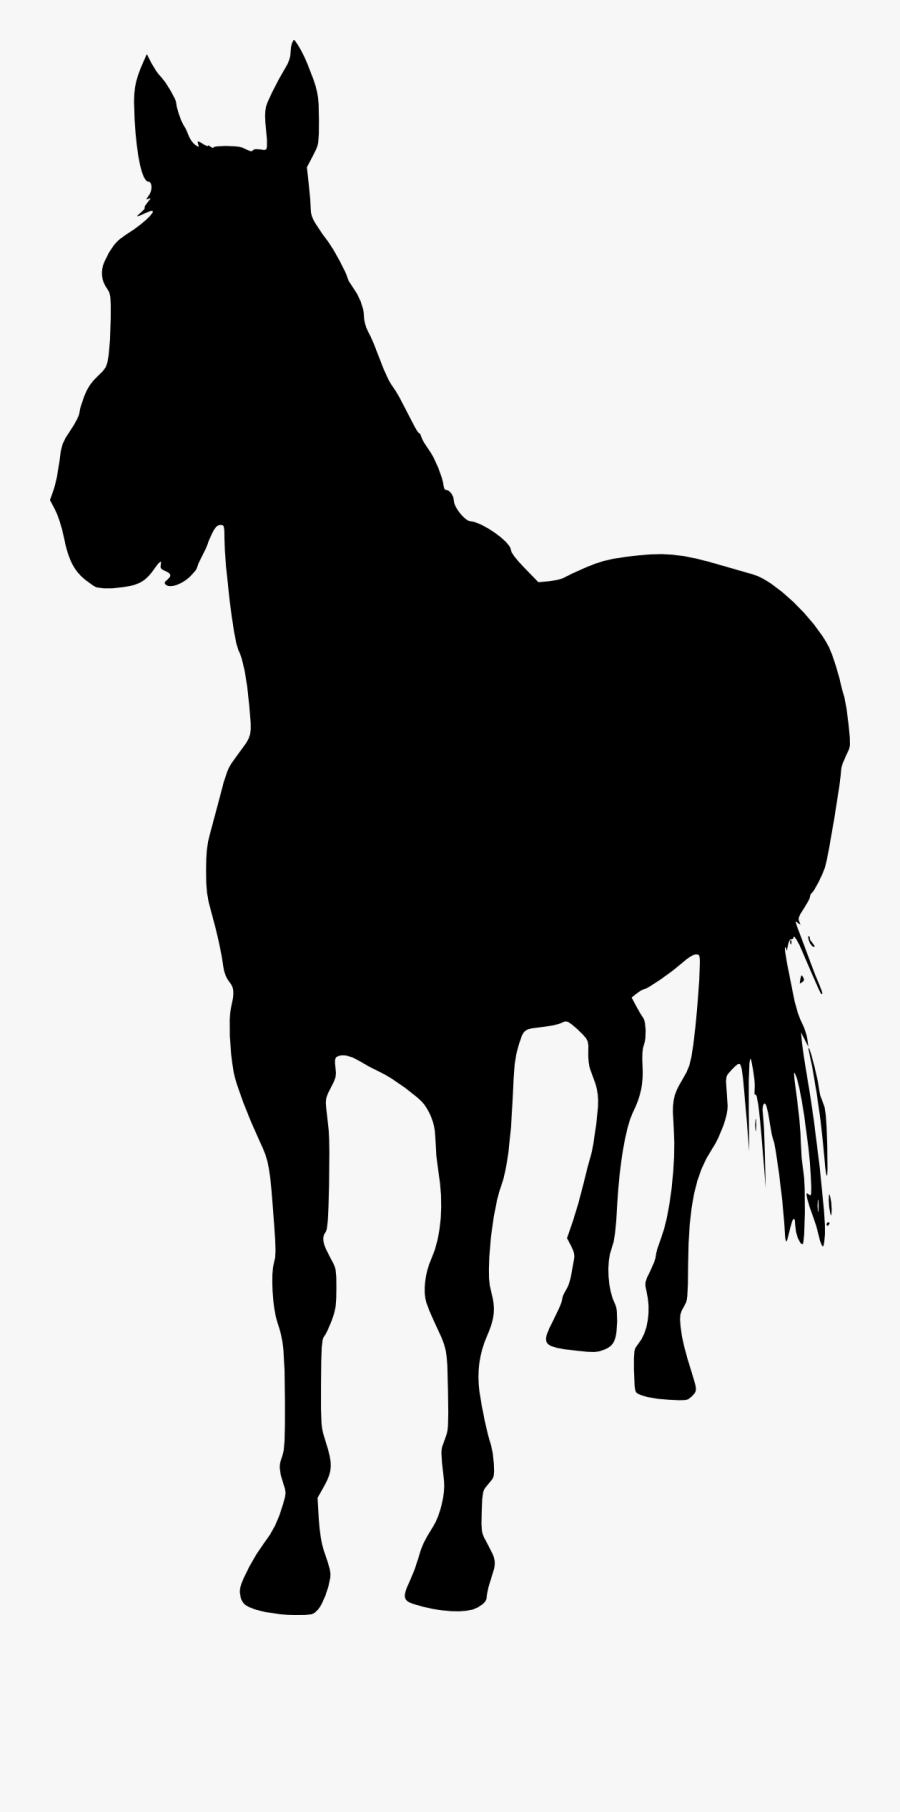 Unicorn Silhouette Clip Art - Horse Silhouette Transparent Background, Transparent Clipart